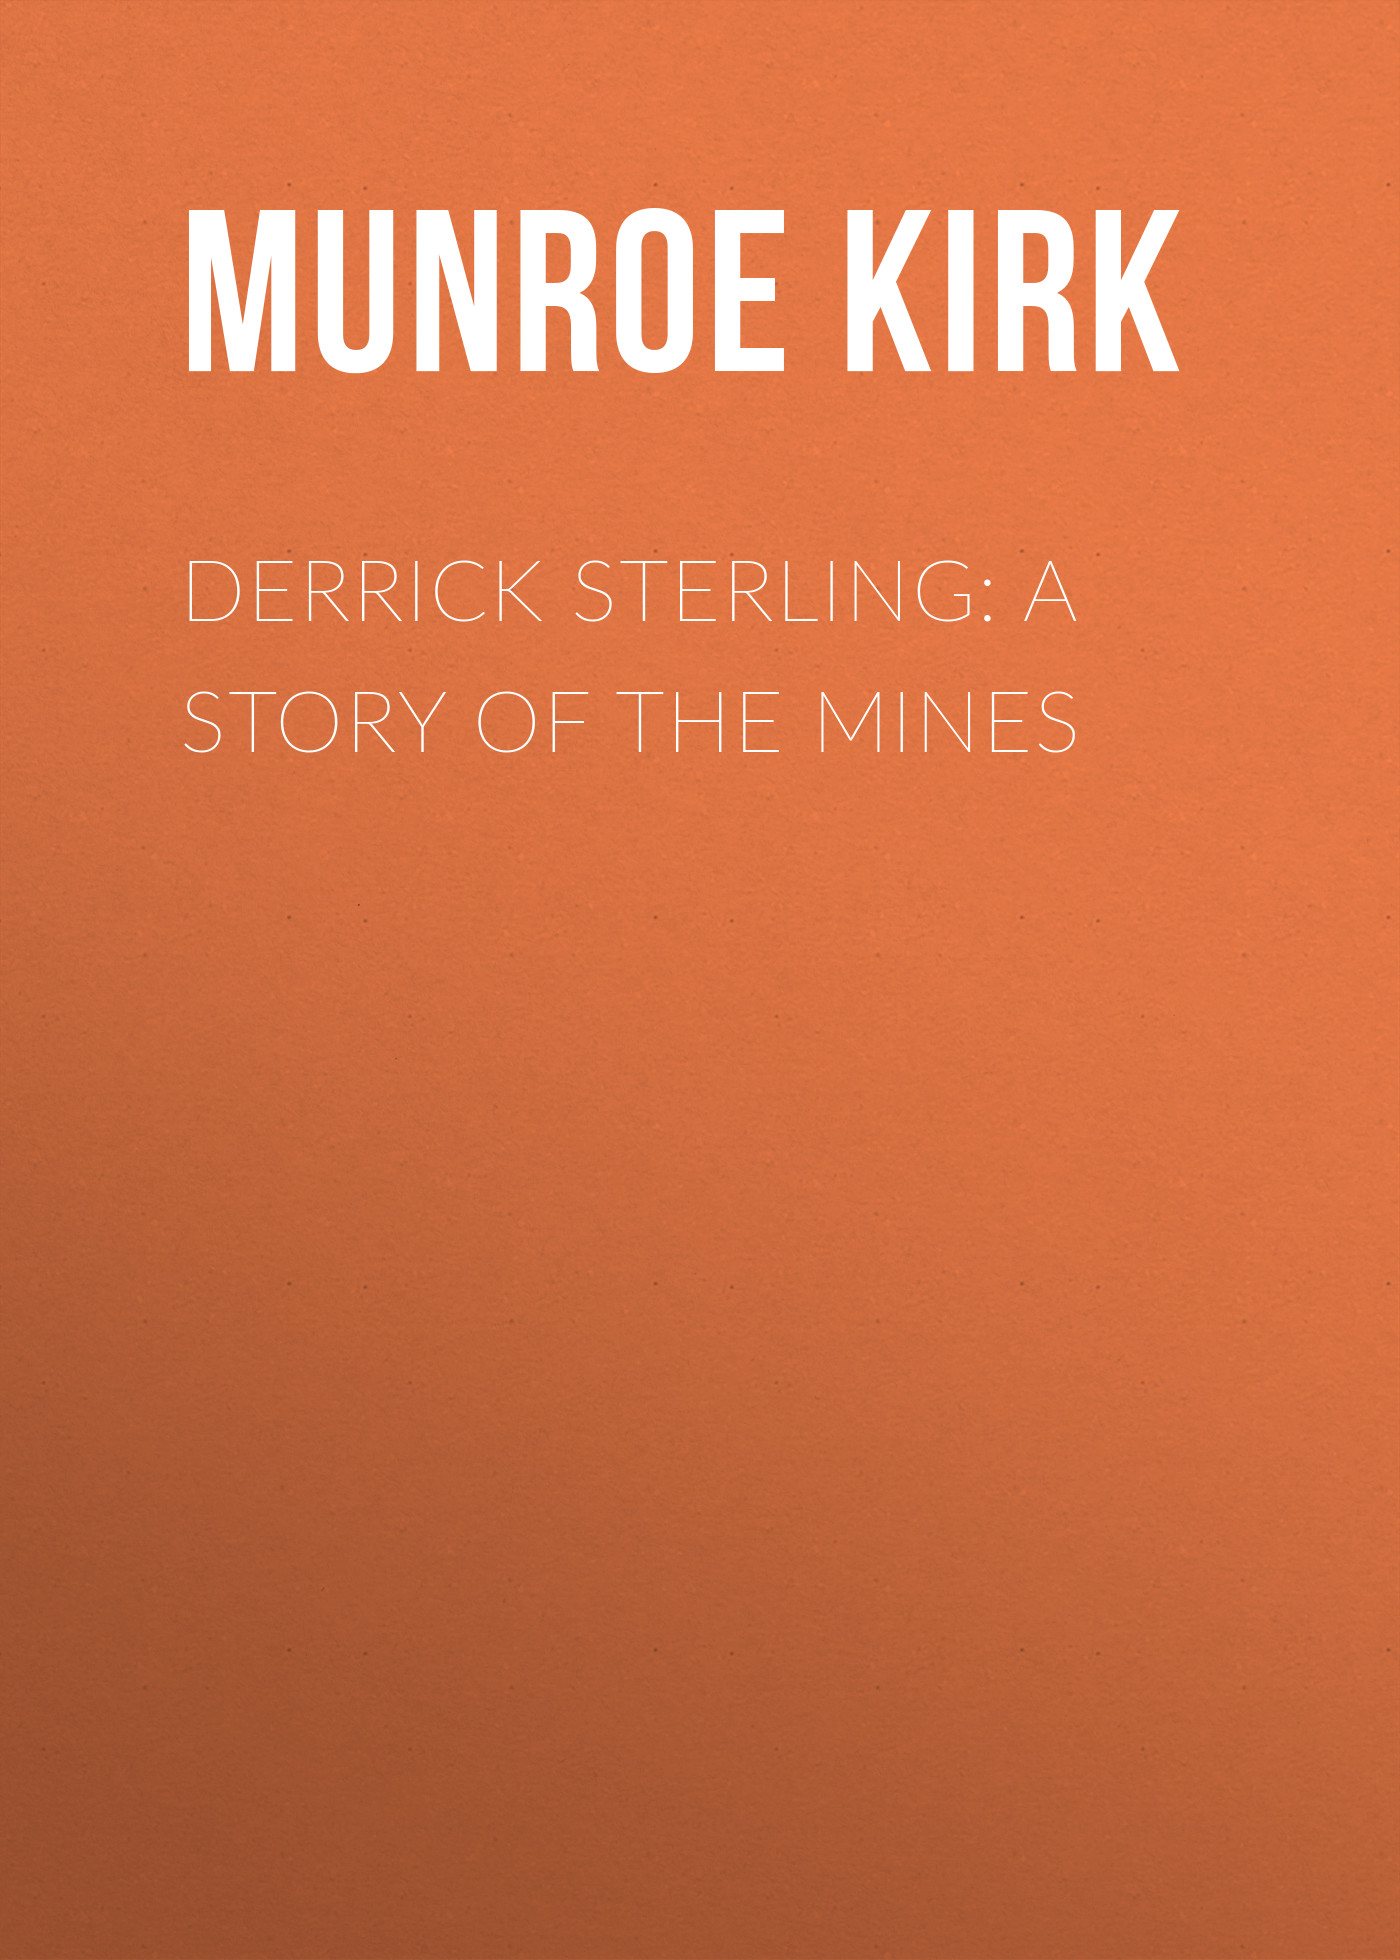 Книга Derrick Sterling: A Story of the Mines из серии , созданная Kirk Munroe, может относится к жанру Зарубежные детские книги, Зарубежная старинная литература, Зарубежная классика. Стоимость электронной книги Derrick Sterling: A Story of the Mines с идентификатором 36092085 составляет 0 руб.